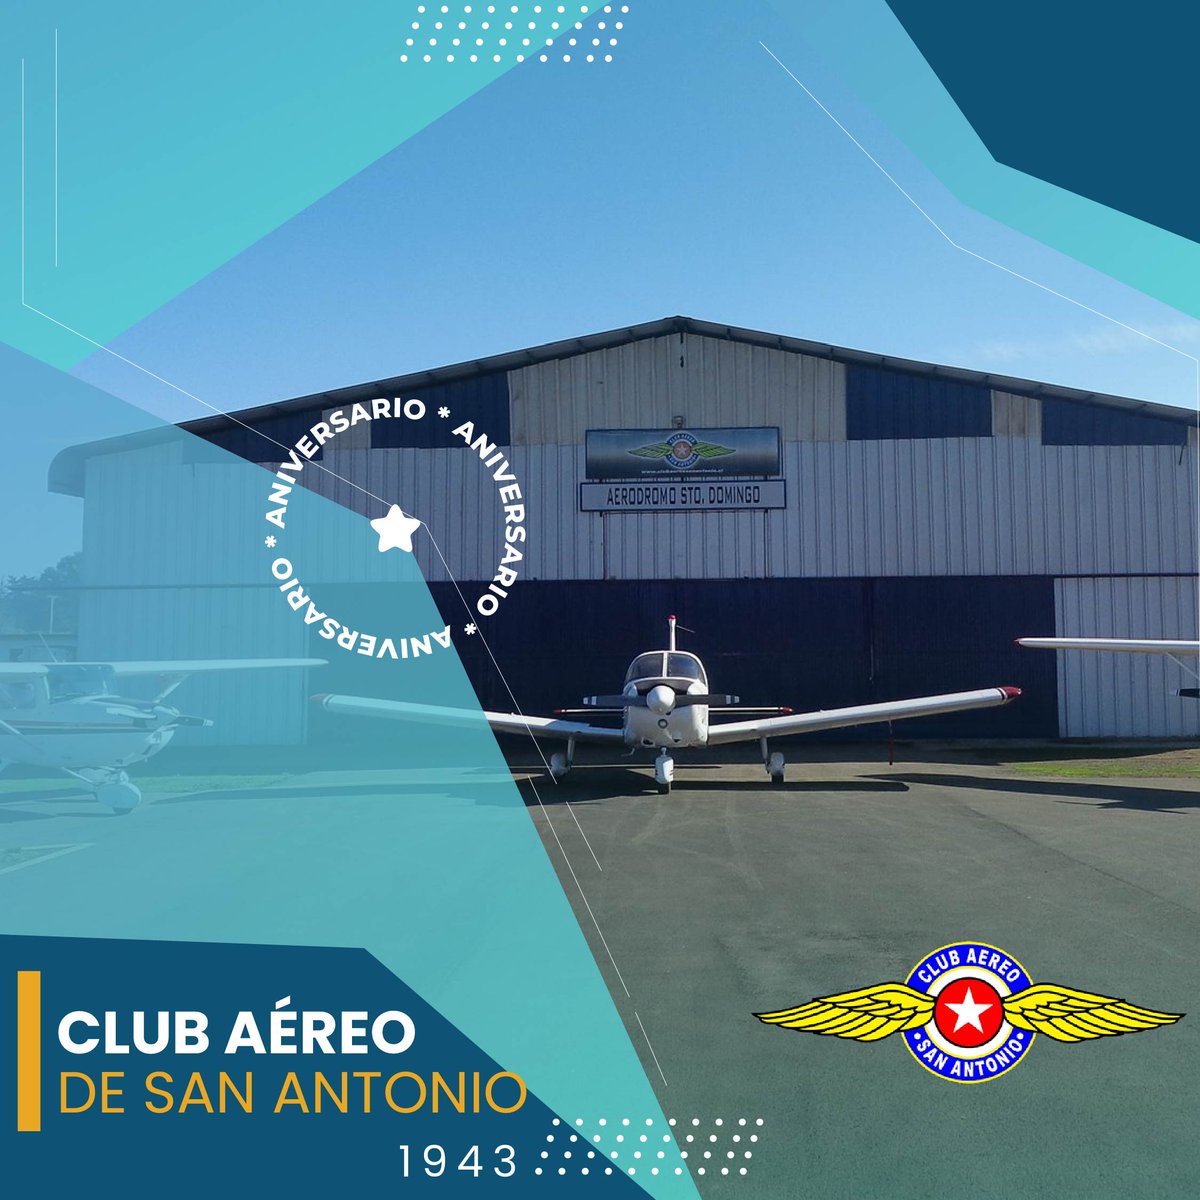 #DatosDGAC Saludamos al Club Aéreo de San Antonio en este nuevo aniversario. Juntos hacemos la aeronáutica Nacional @DGACChile #RedAeroportuaria